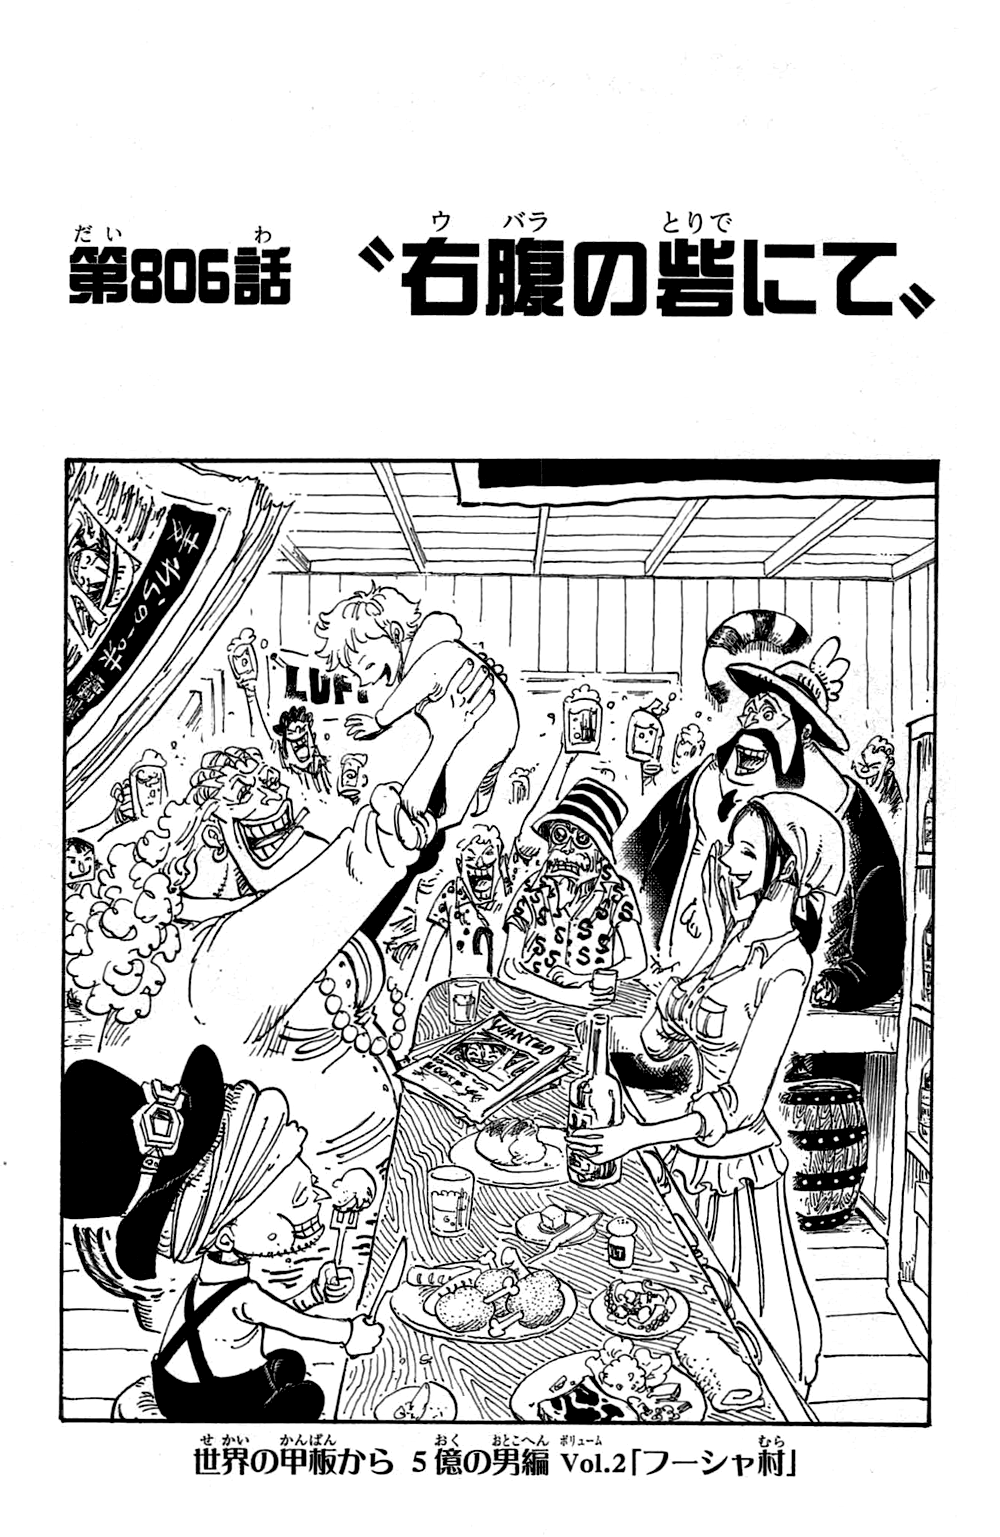 Category Zou Arc Chapters One Piece Wiki Fandom